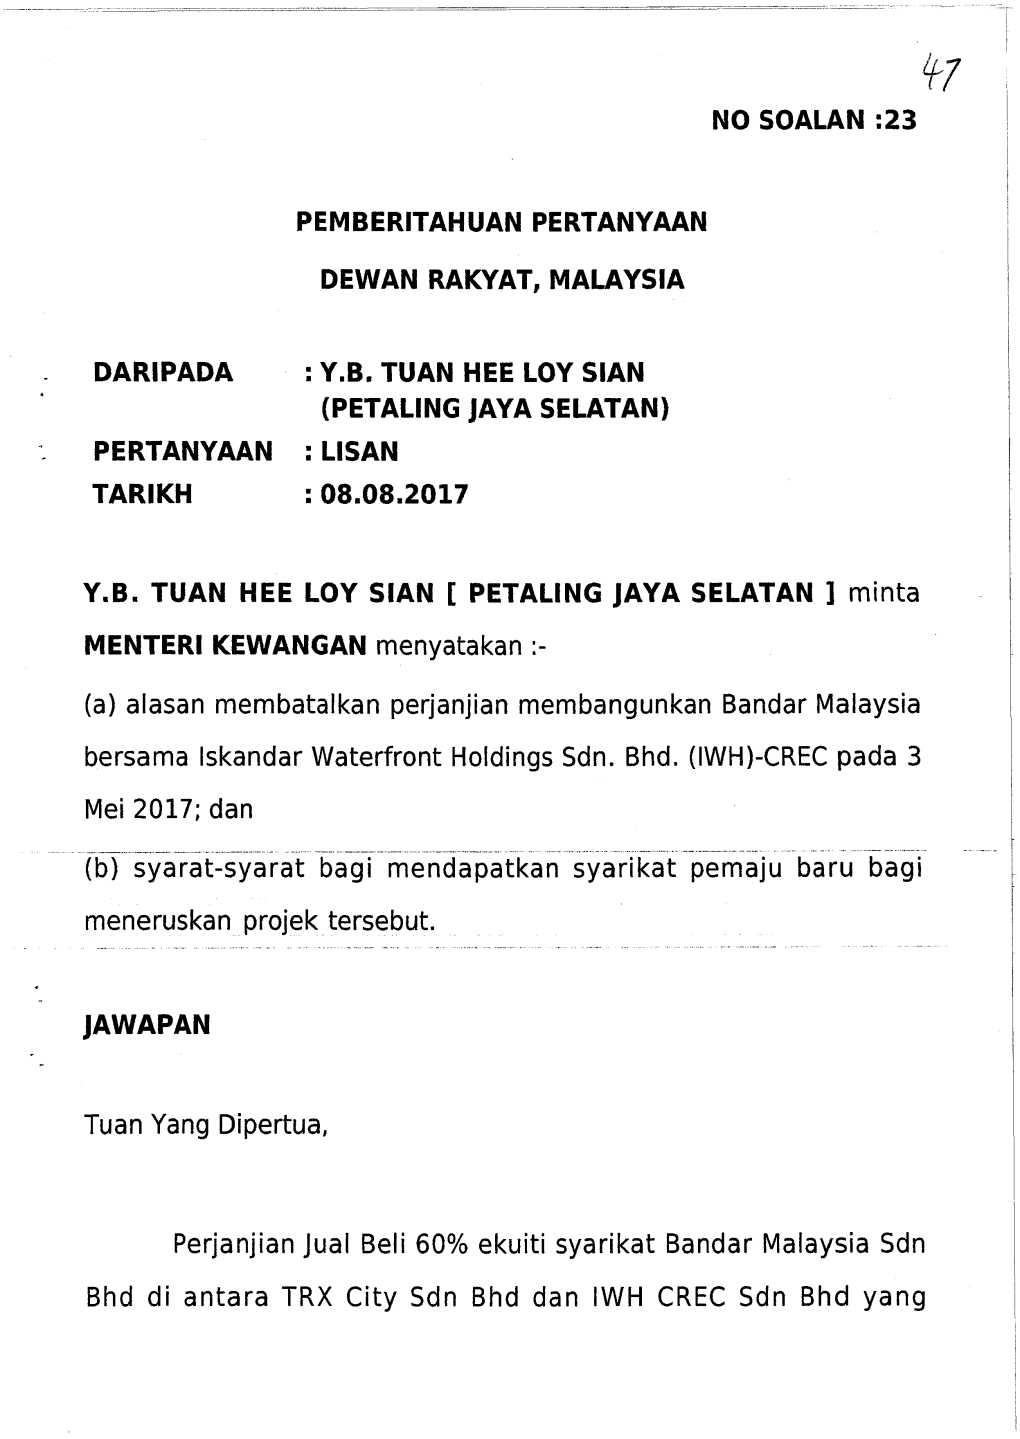 Pemberitahuan Pertanyaan Dewan Rakyat, Malaysia Daripada : Y.B. Tuan Hee Loy Sian (Petaling Jaya Selatan) Pertanyaan : Lisan